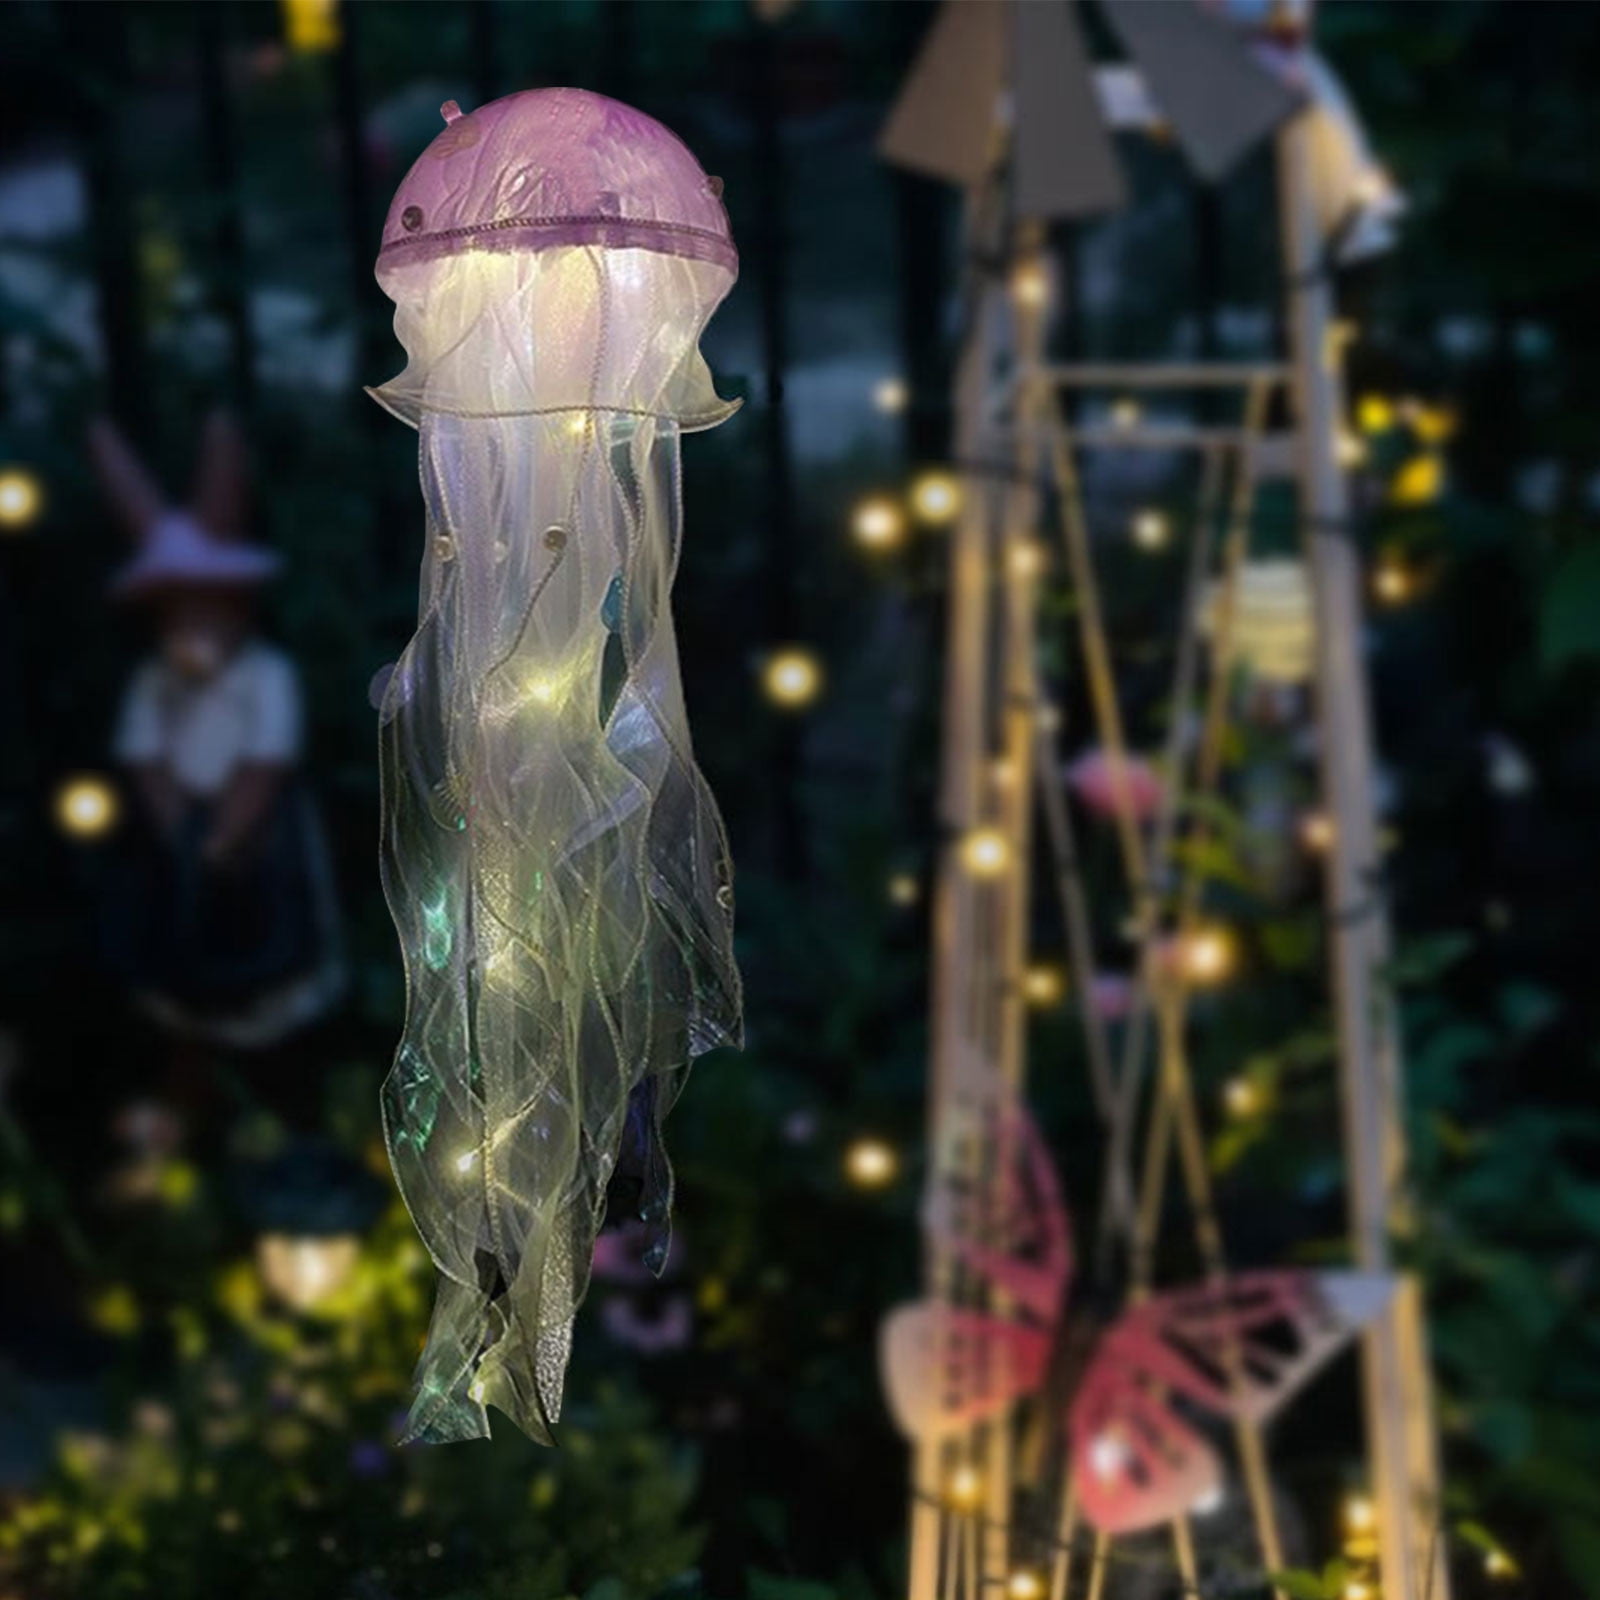 Cool Homemade Bio-Luminescent Jellyfish Costume